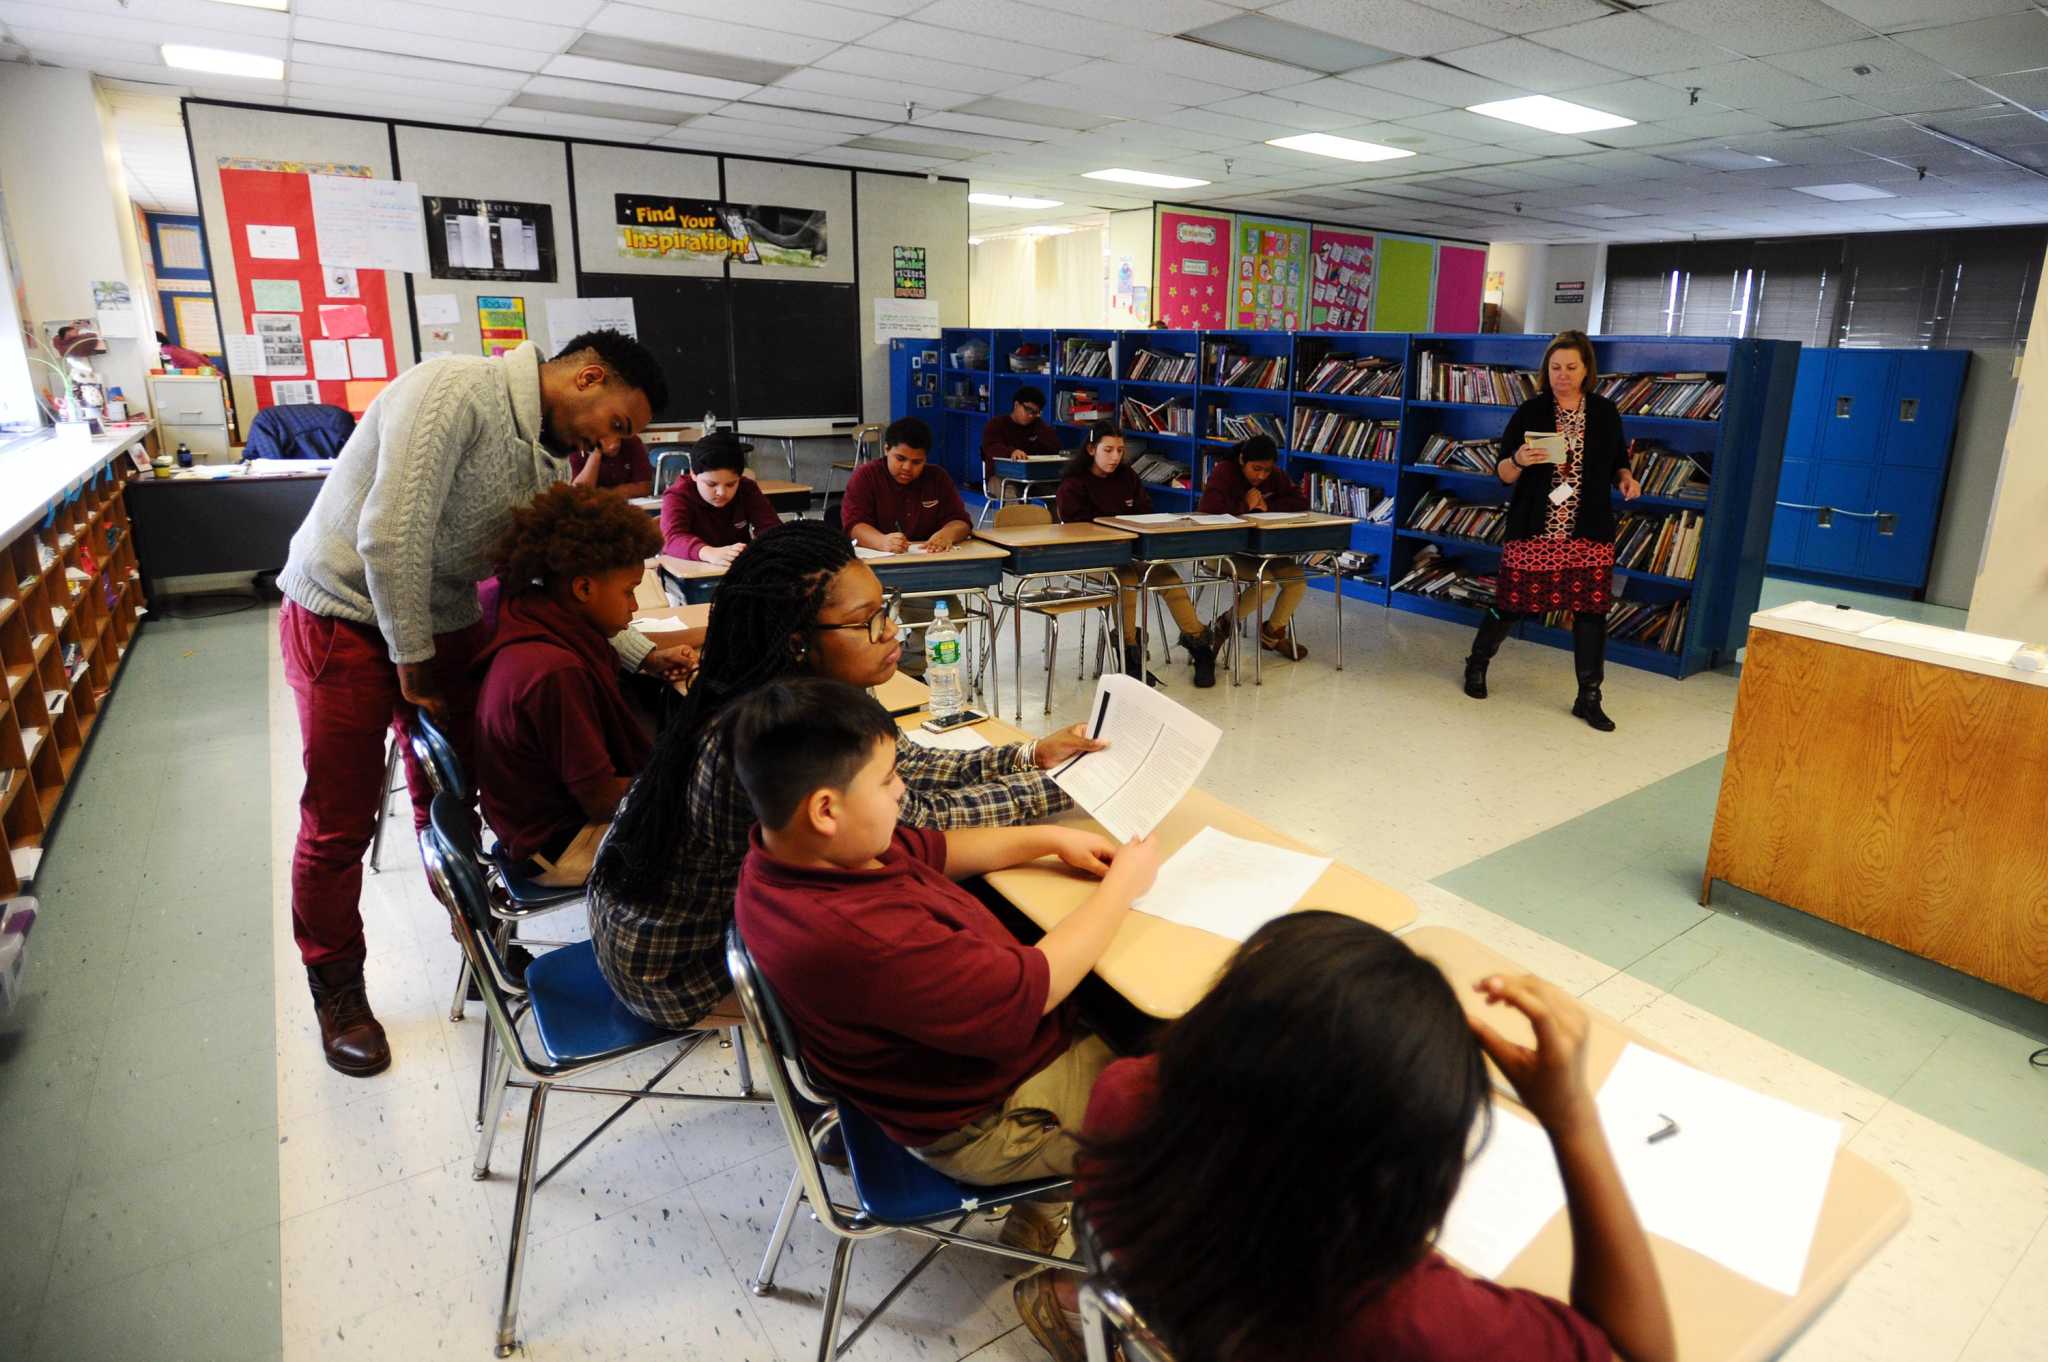 Teaching jobs in charter schools in ct